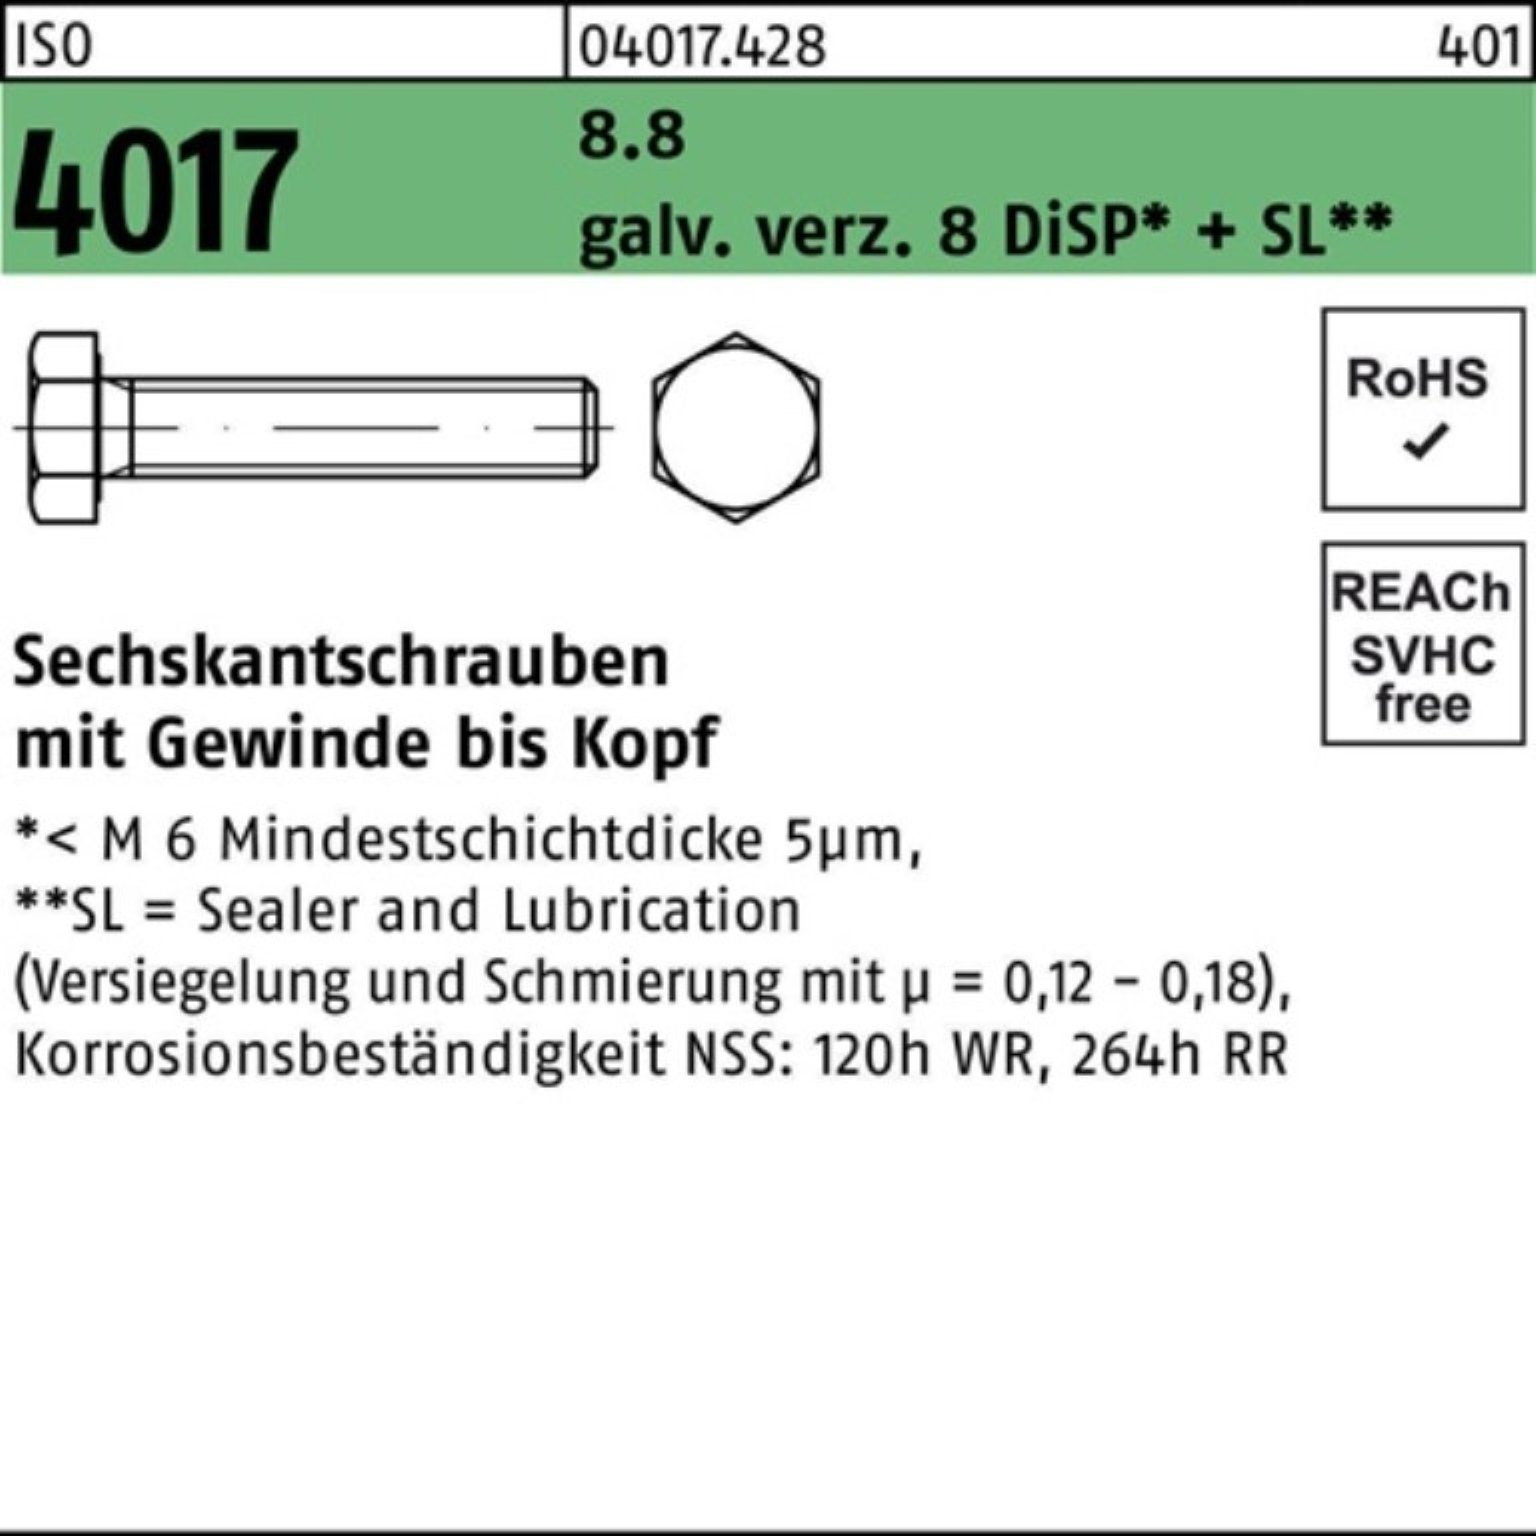 M3x DiSP+ 500er Bufab 4017 ISO Pack 8 Sechskantschraube 25 8.8 Sechskantschraube galv.verz. VG